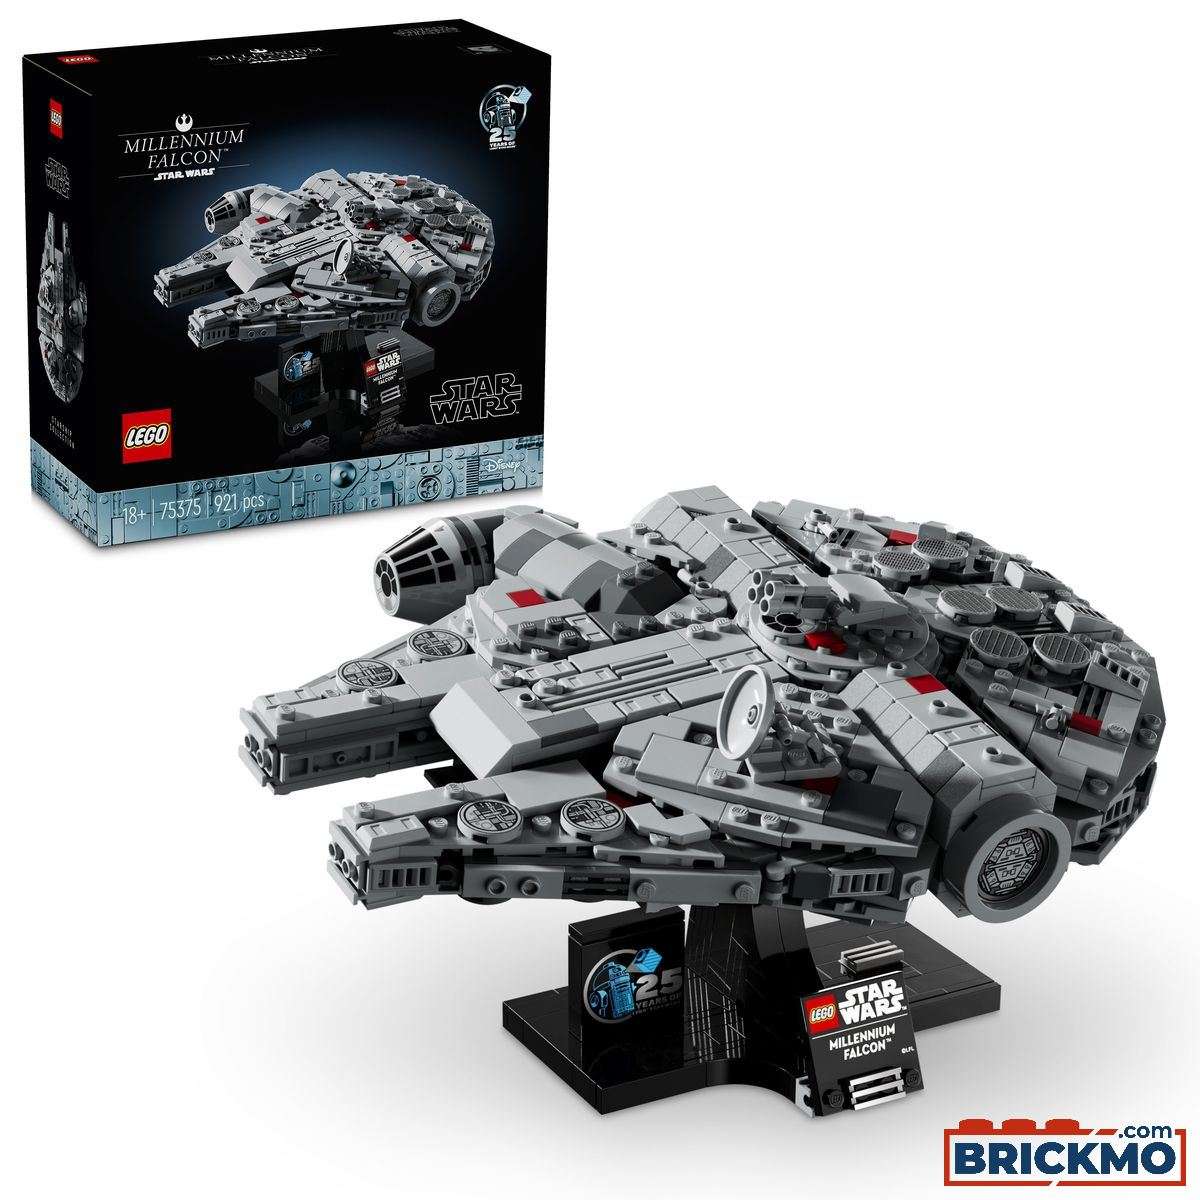 LEGO Star Wars 75375 Millennium Falcon 75375